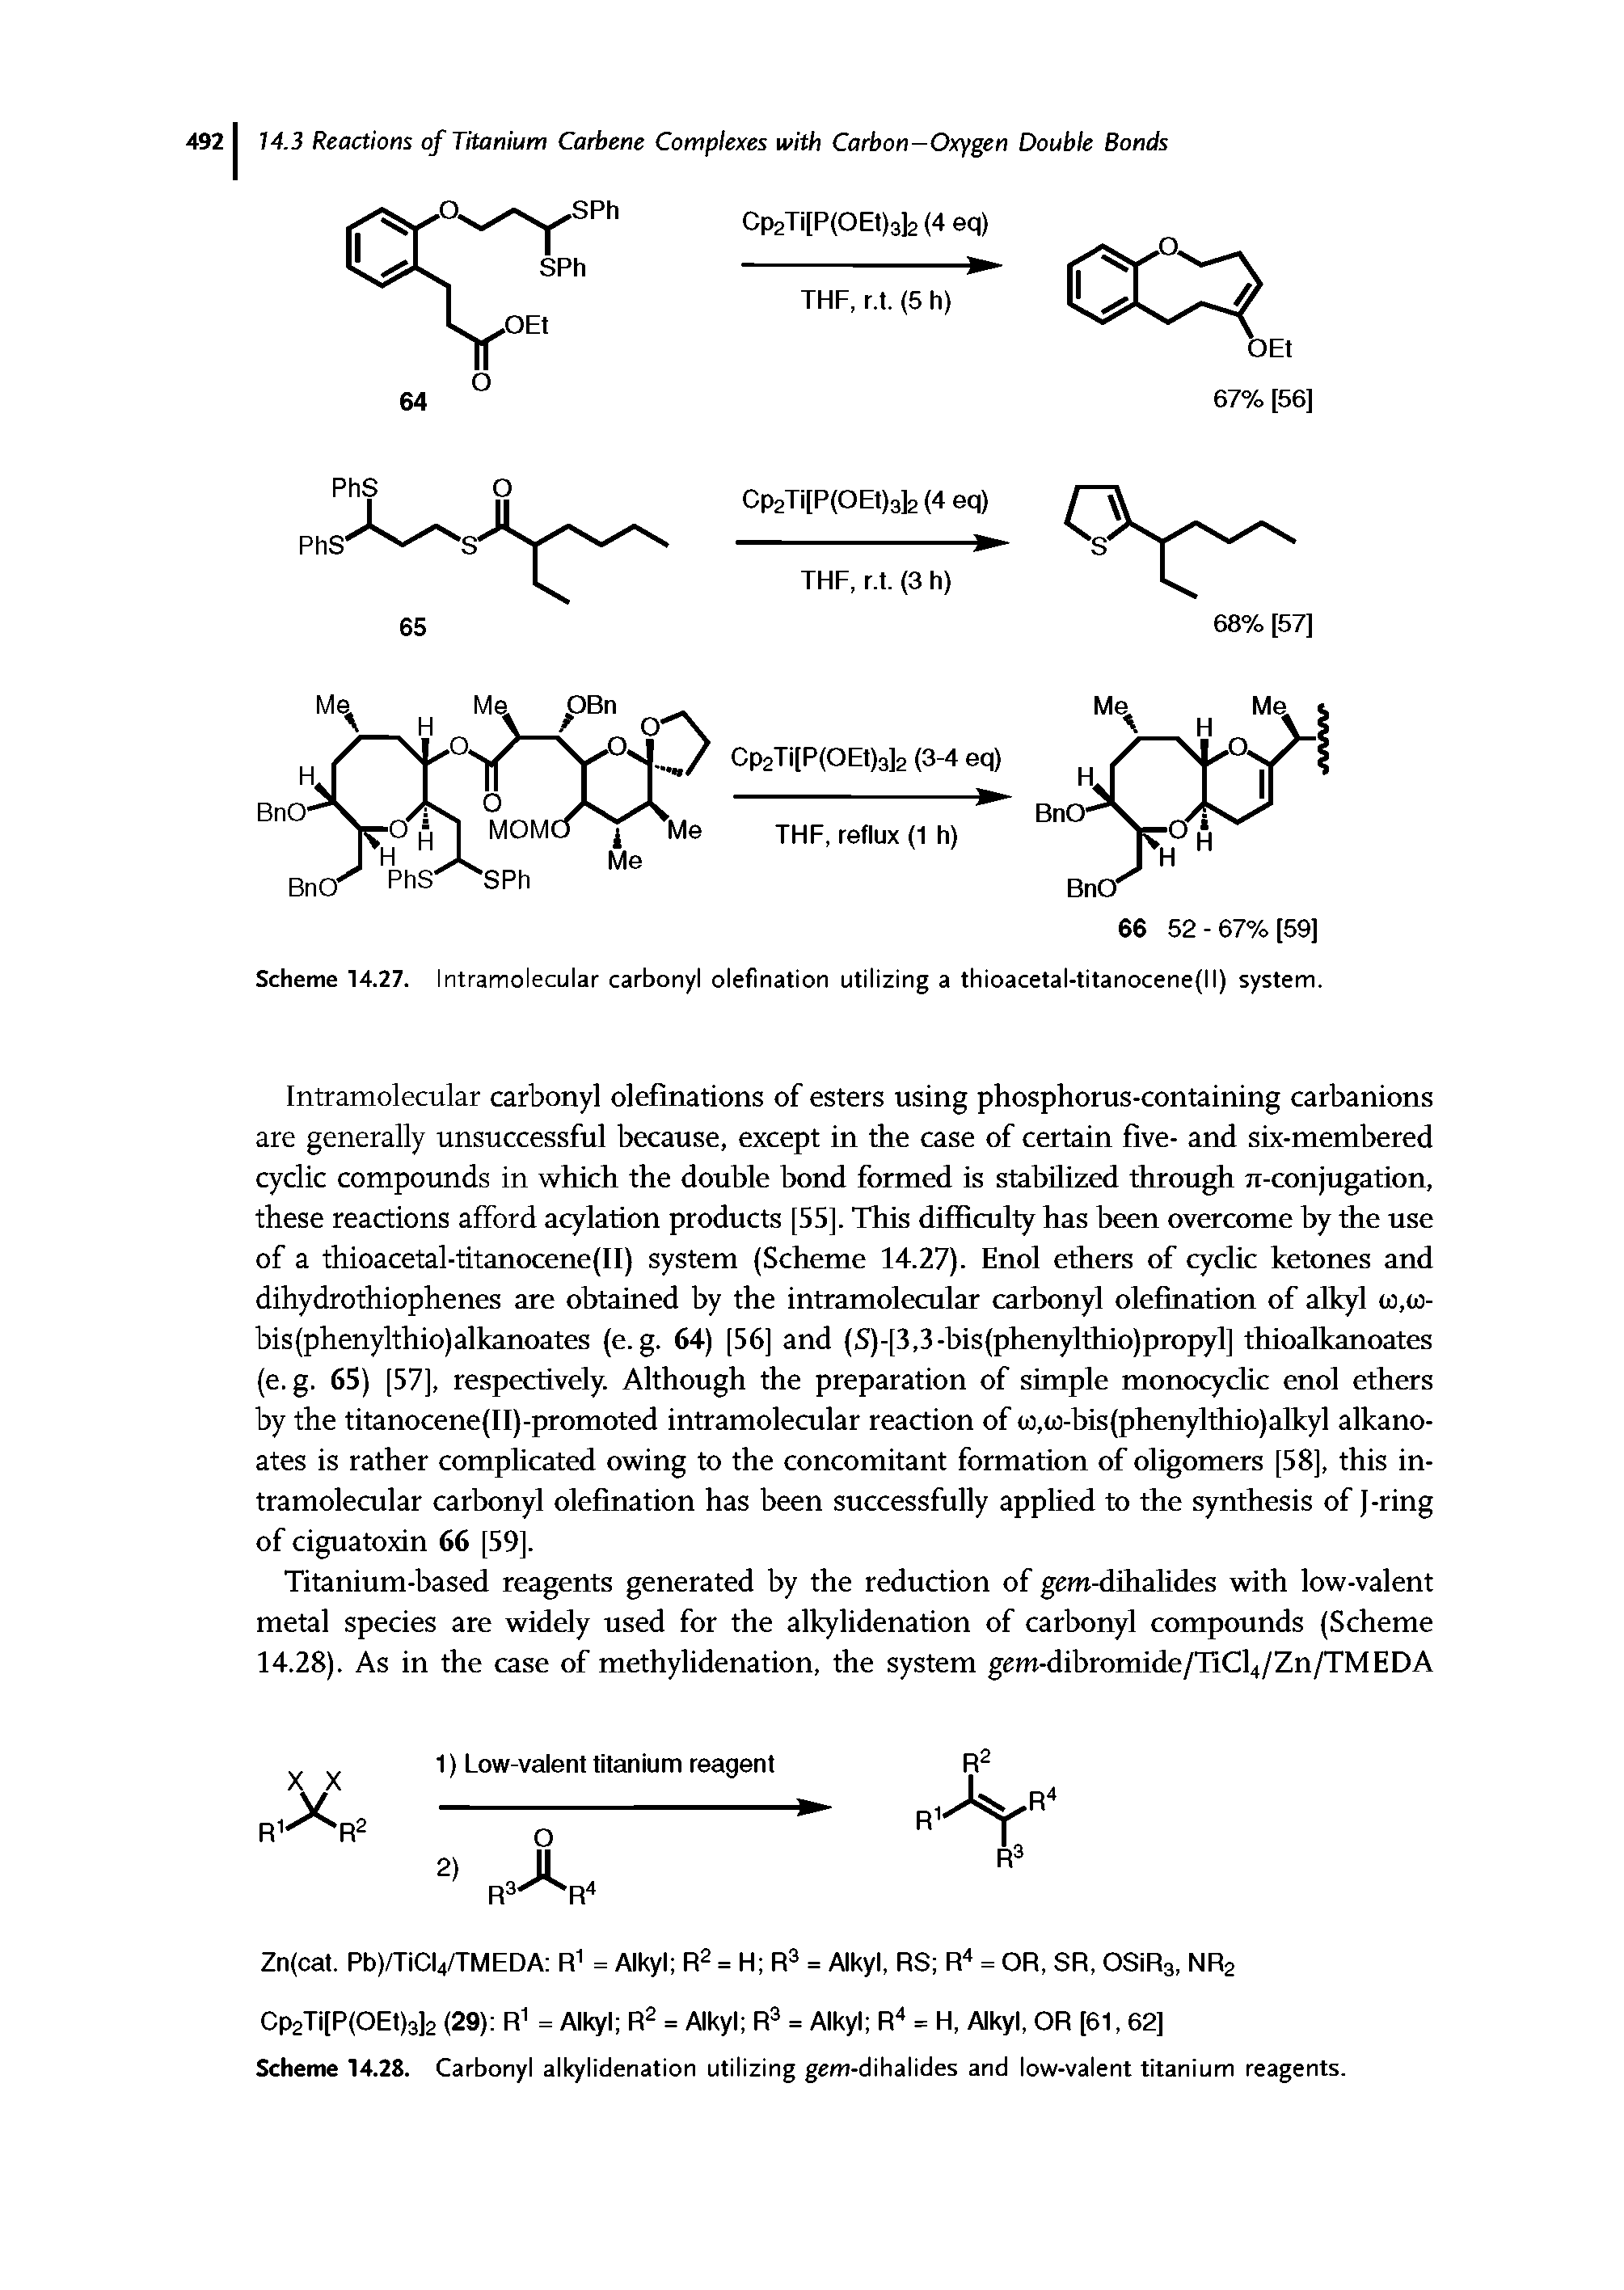 Scheme 14.27. Intramolecular carbonyl olefination utilizing a thioacetal-titanocene(ll) system.